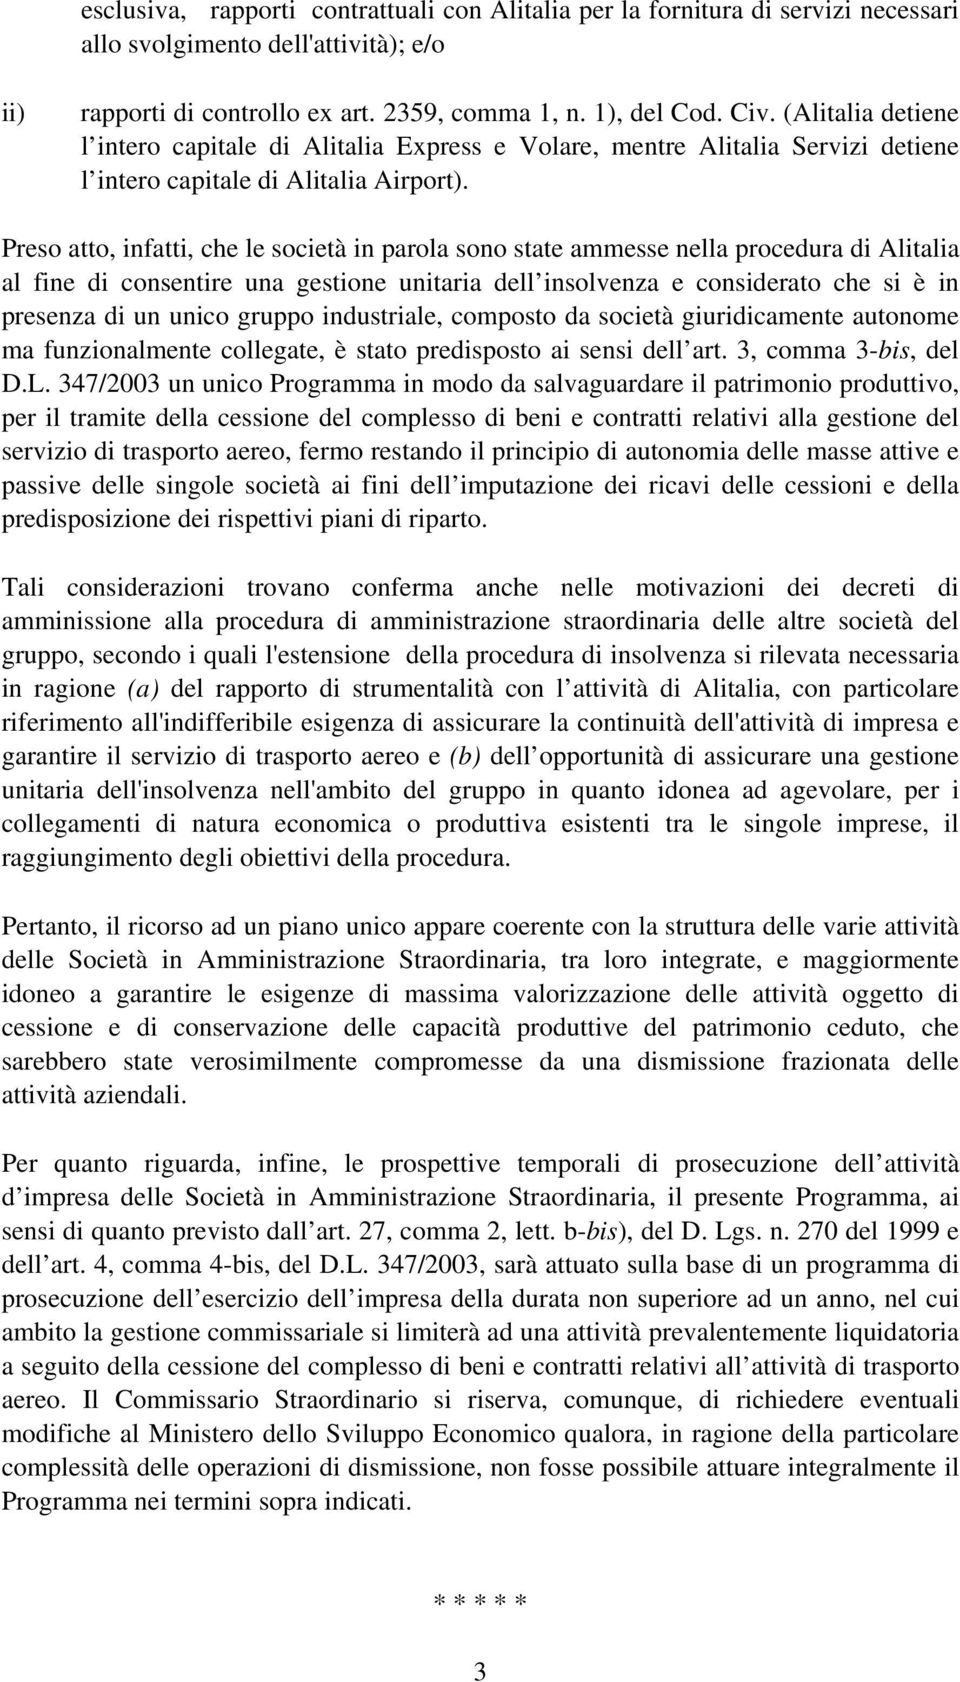 Preso atto, infatti, che le società in parola sono state ammesse nella procedura di Alitalia al fine di consentire una gestione unitaria dell insolvenza e considerato che si è in presenza di un unico